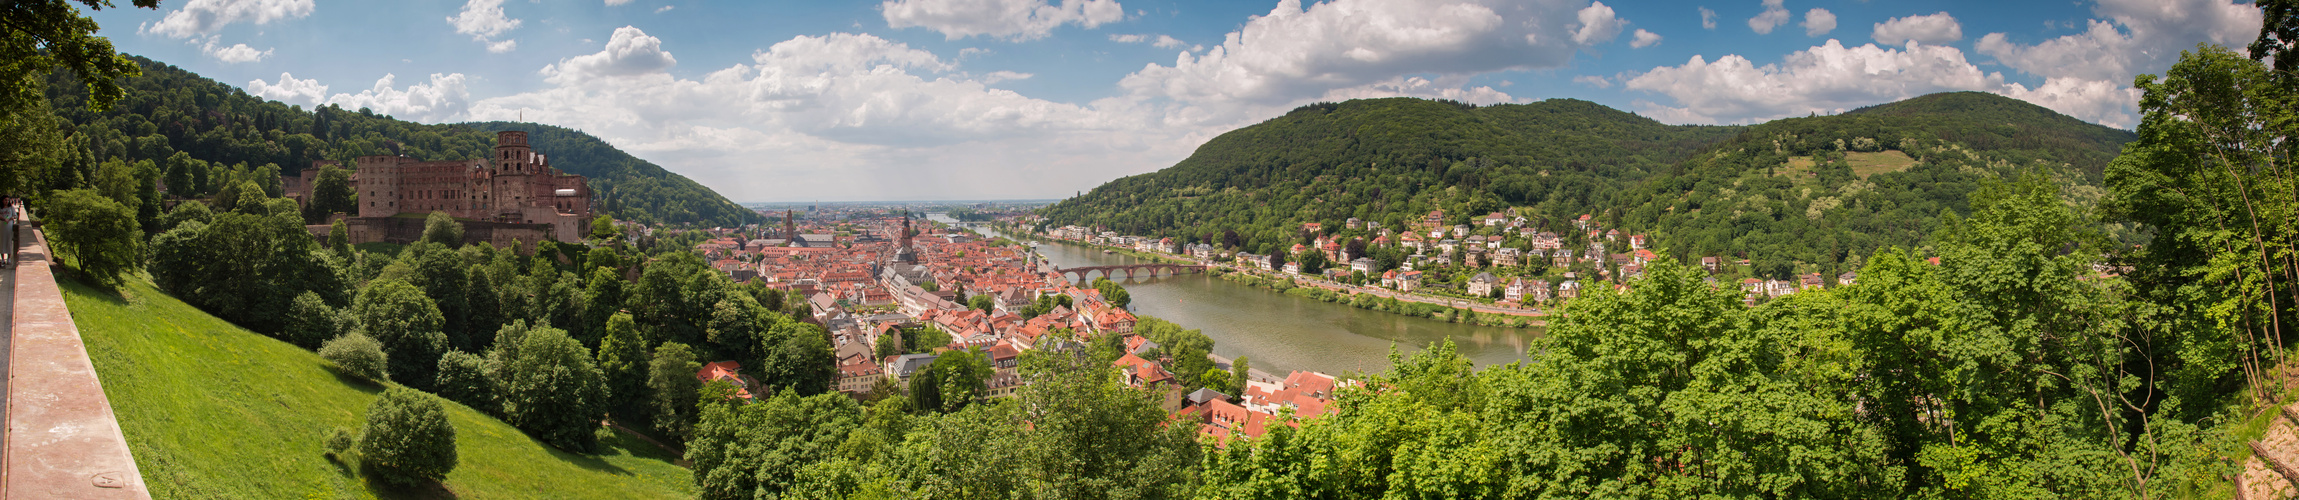 Heidelberg im Ganzen